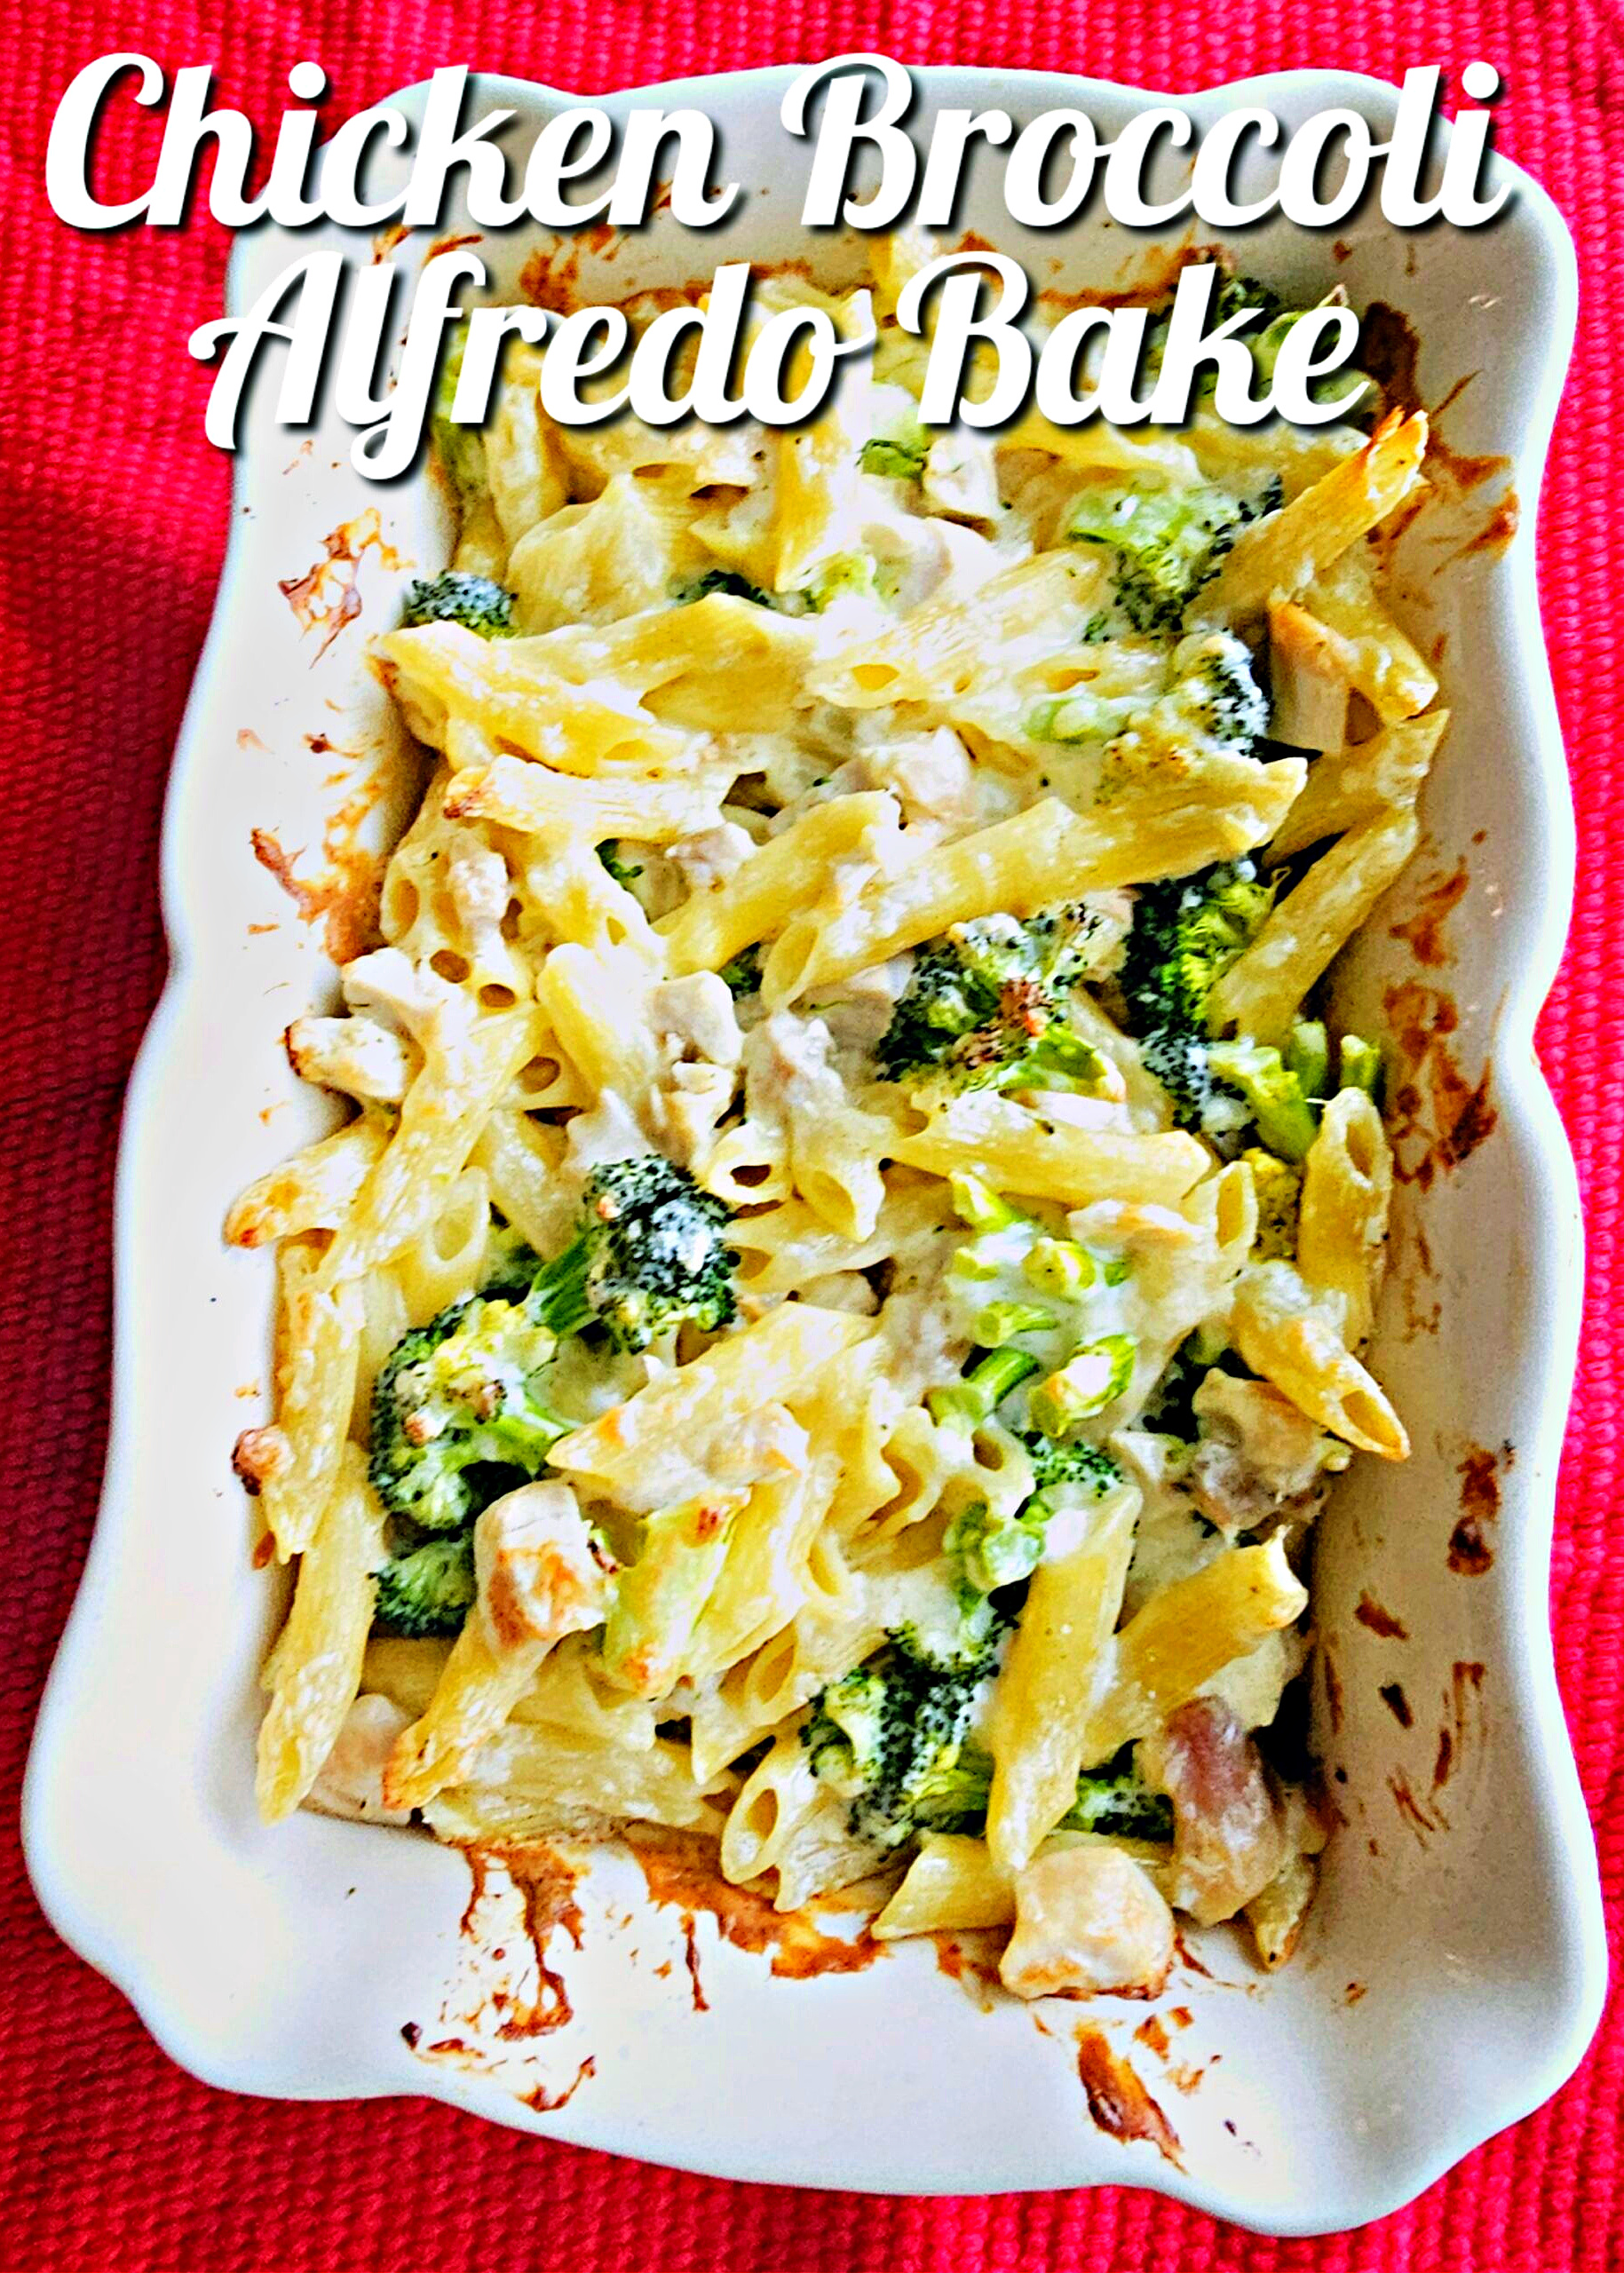 Chicken Broccoli Alfredo Bake #chicken #broccoli #alfredo #pasta #bakedpasta #casserole #dinner #weeknightdinner #familydinner